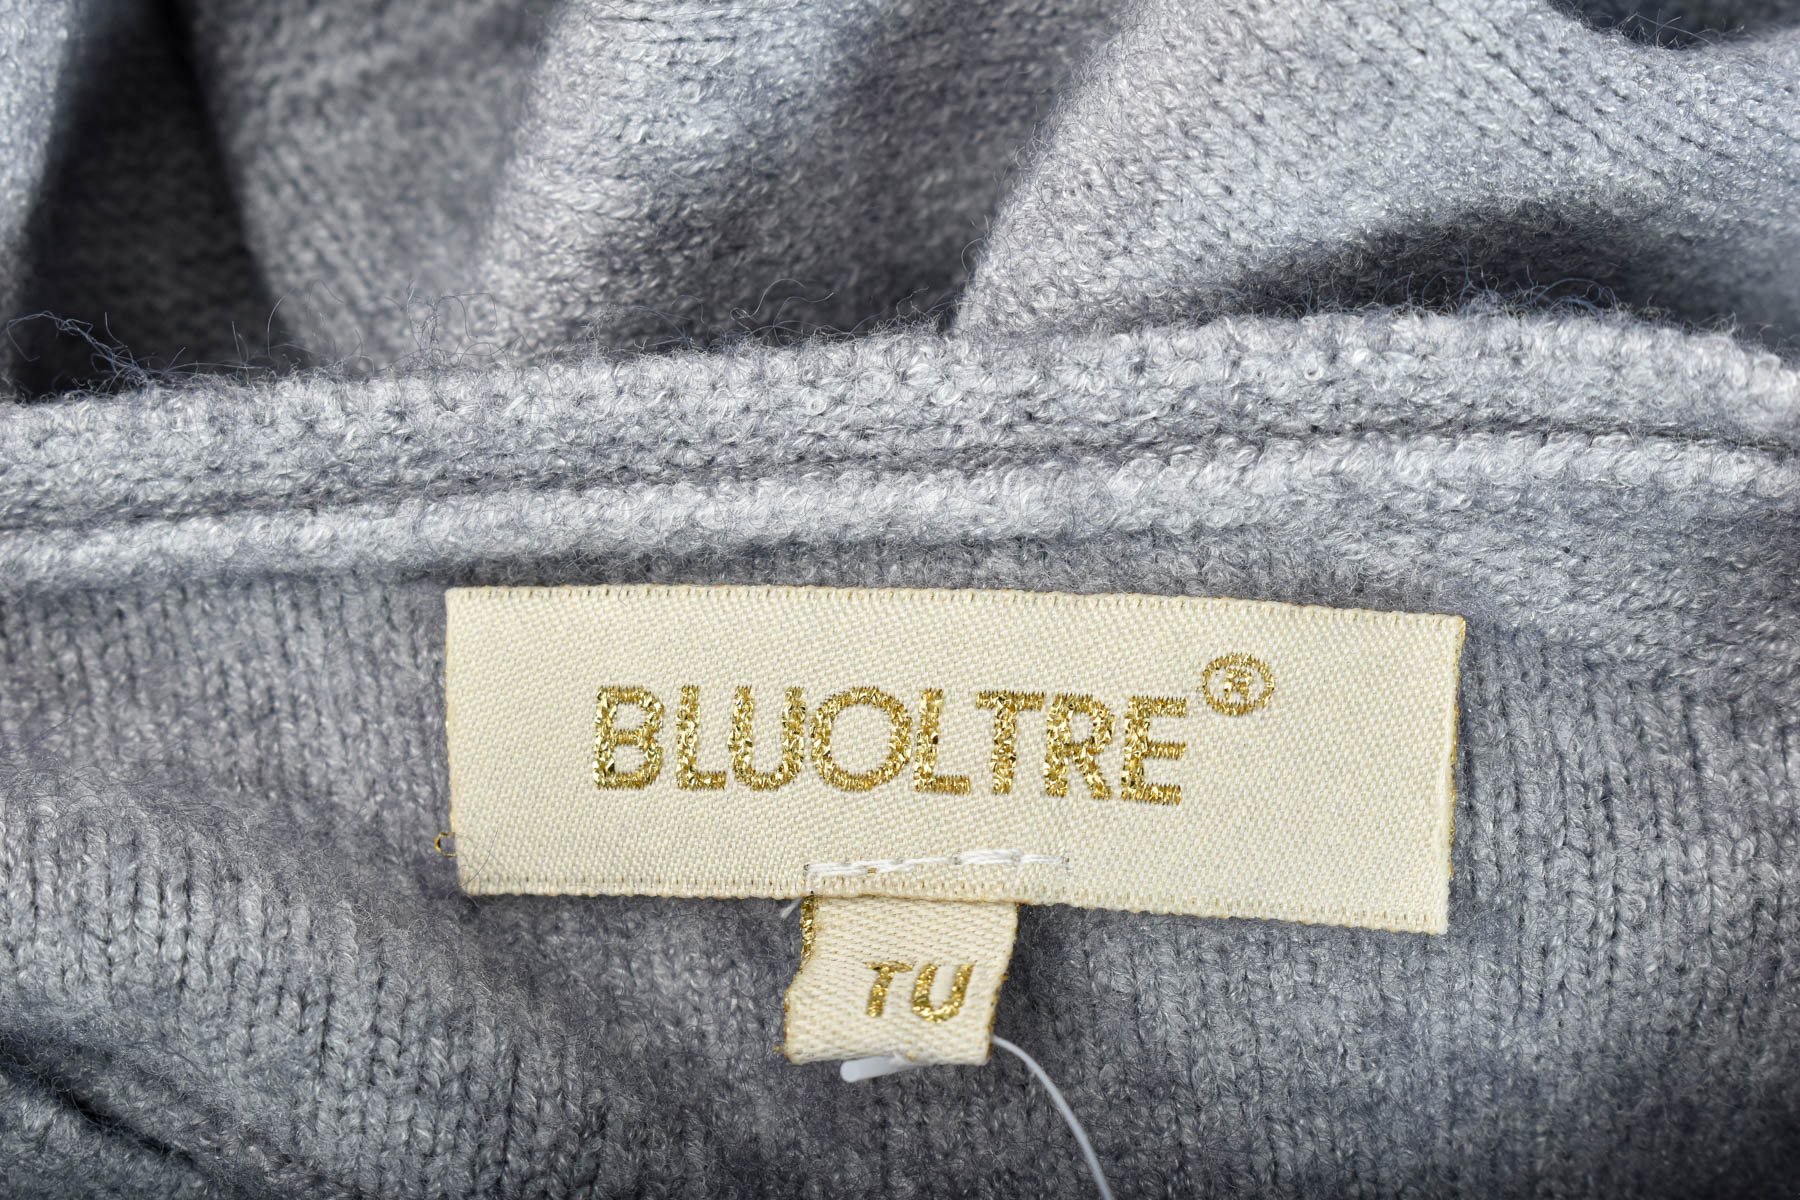 Women's sweater - Bluoltre - 2